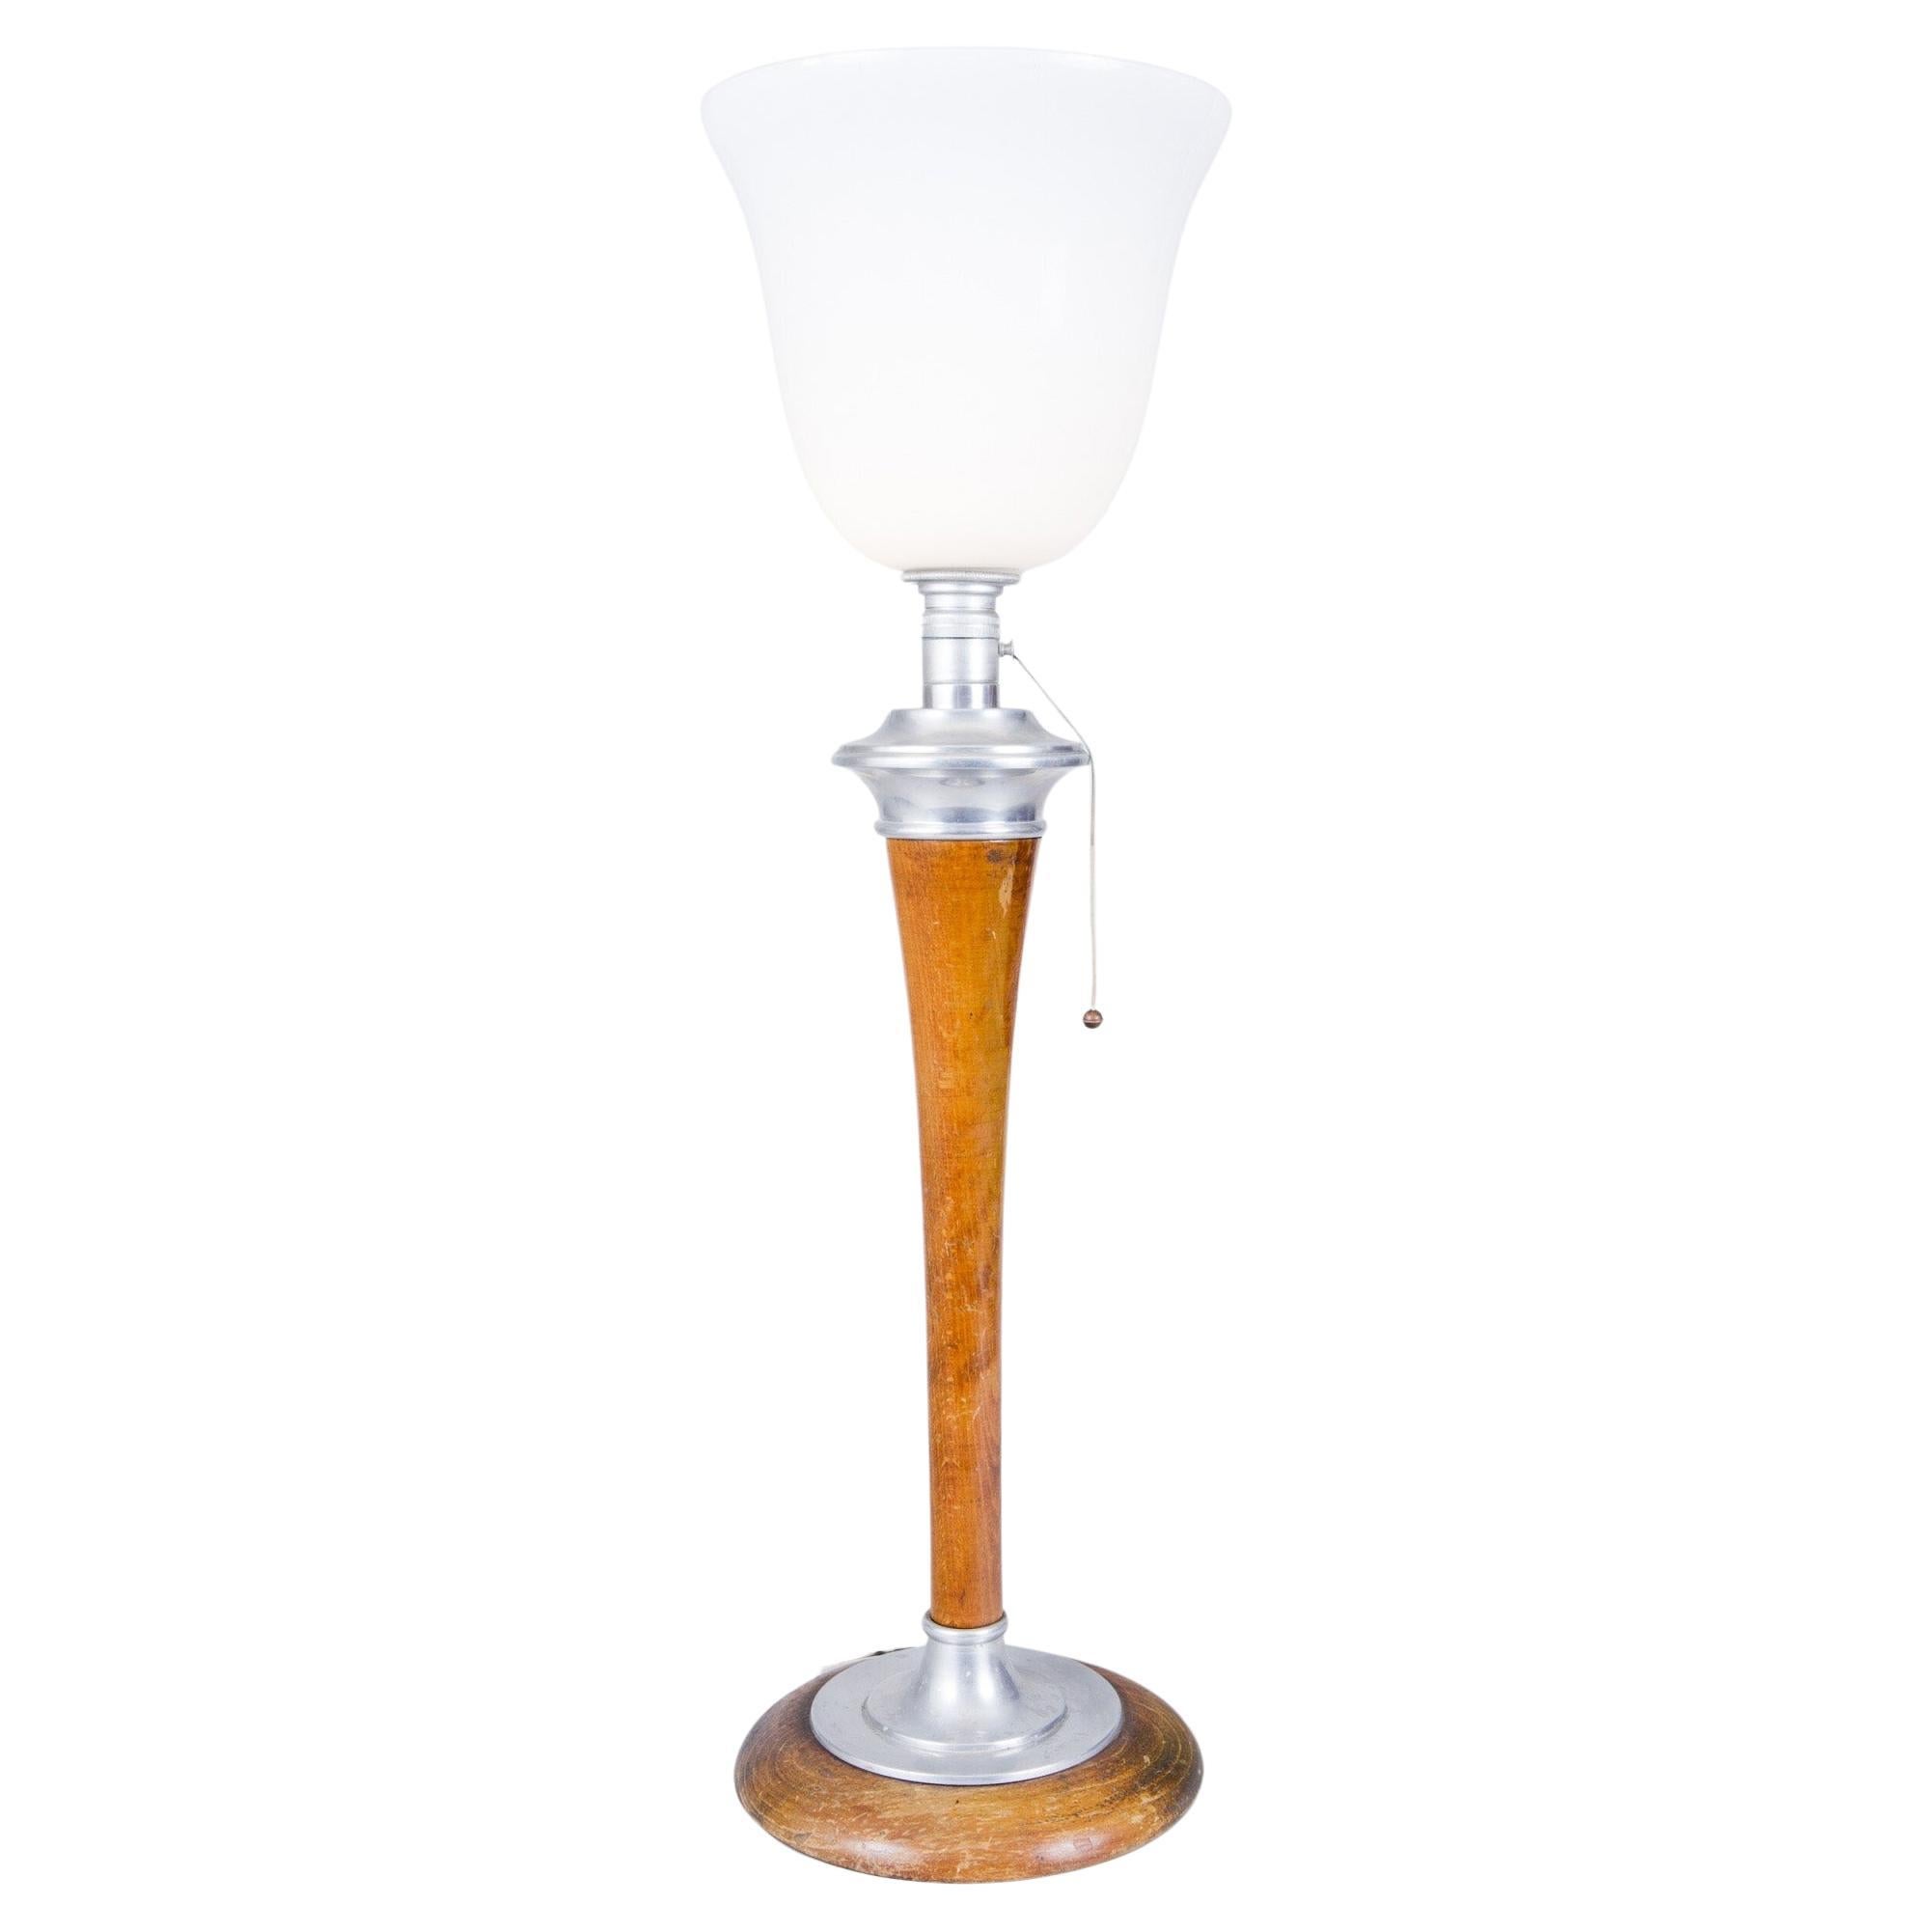 Lampe Art déco française fabriquée dans les années 1920, non restaurée